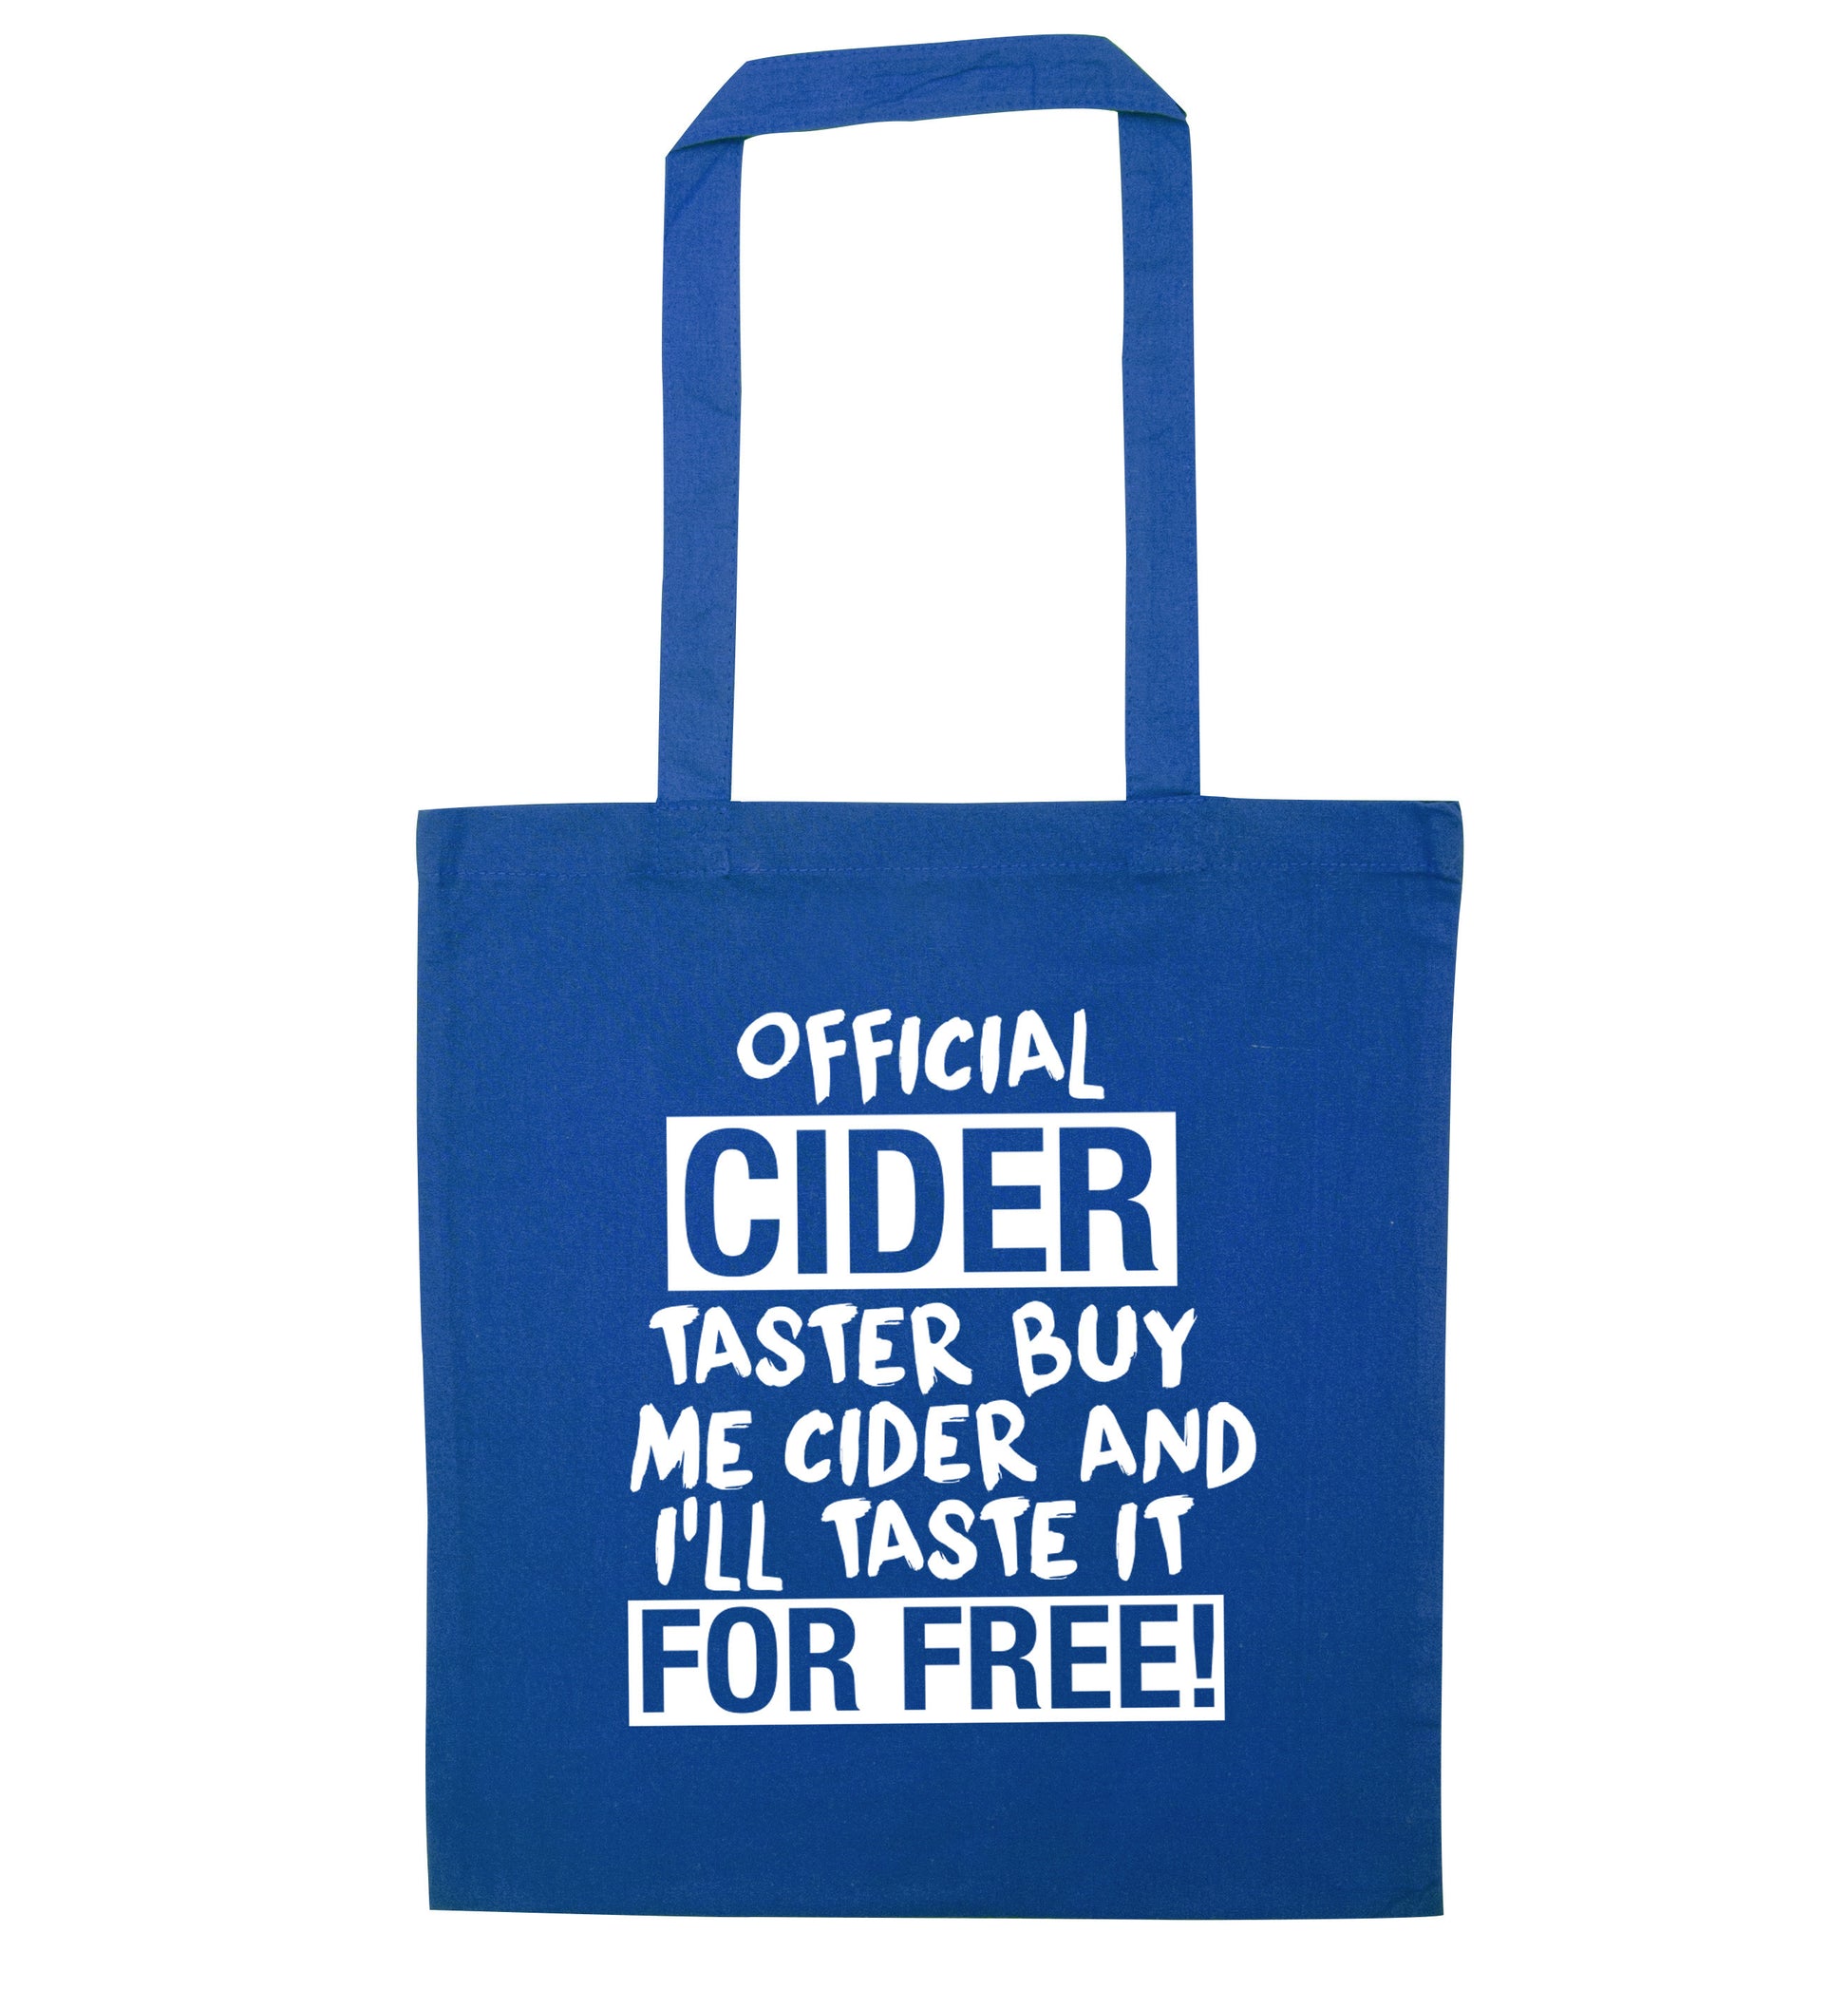 Official cider taster buy me cider and I'll taste it for free! blue tote bag